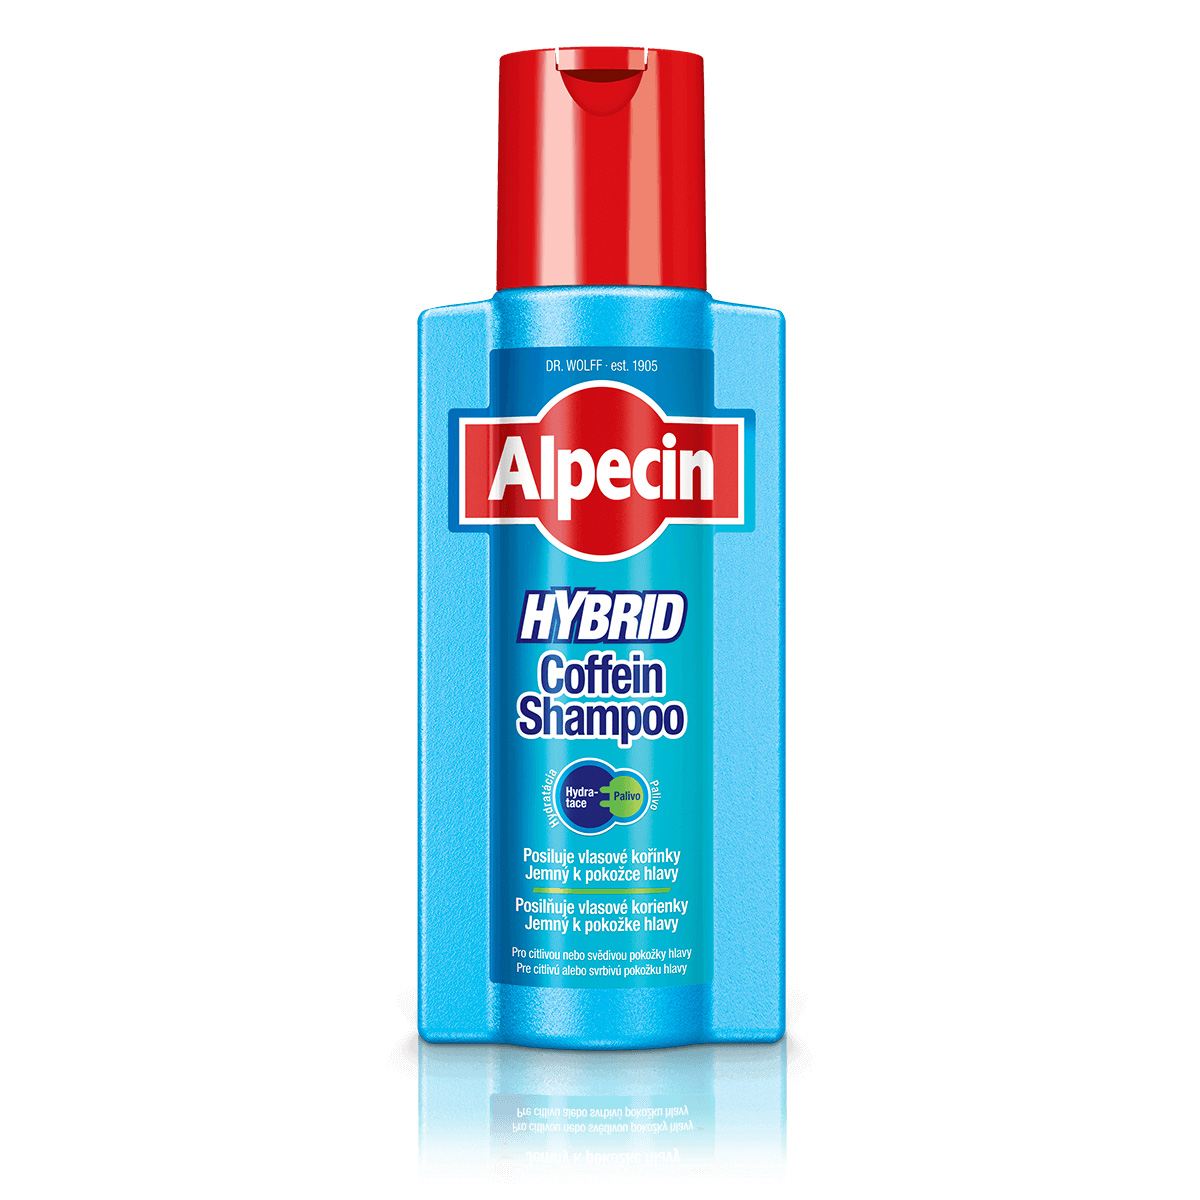 Alpecin - Alpecin Hybrid kofeinový šampon